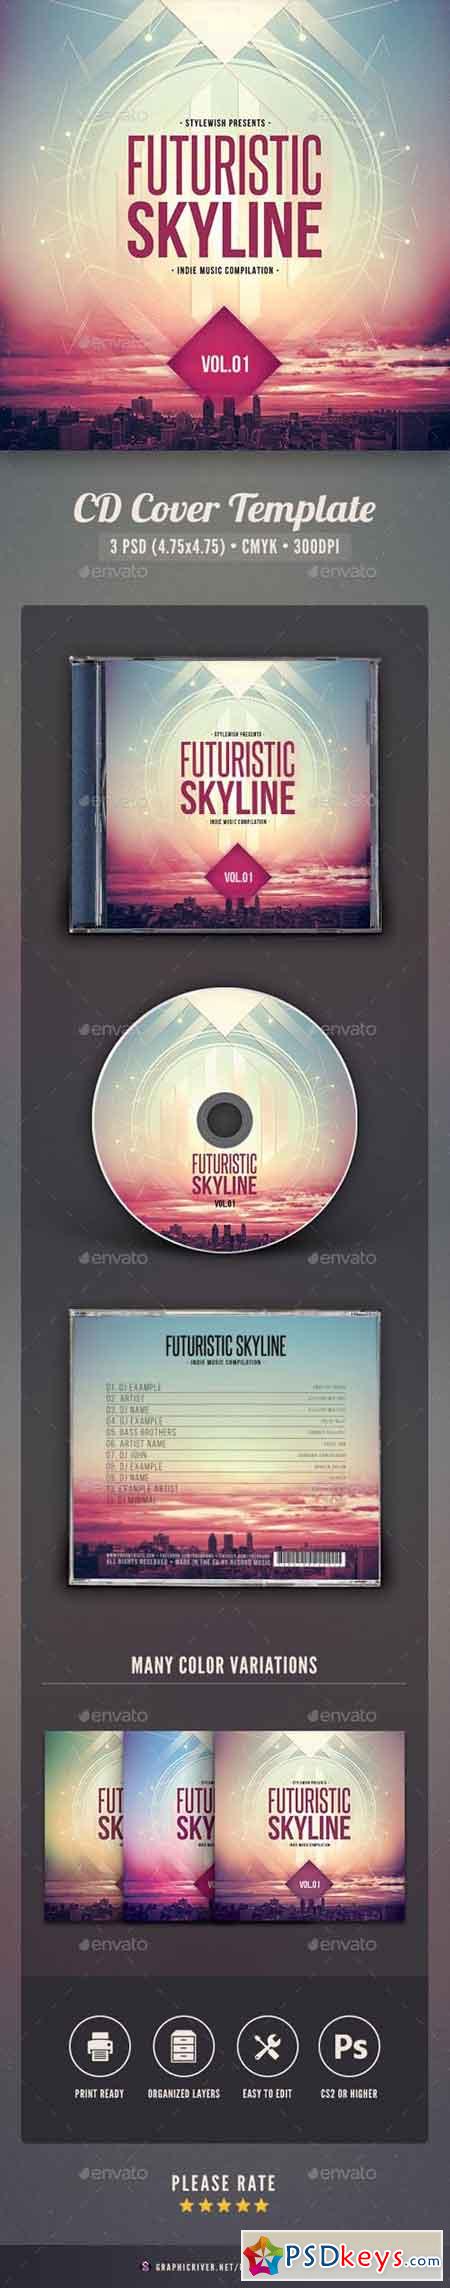 Futuristic Skyline CD Cover Artwork 16037661